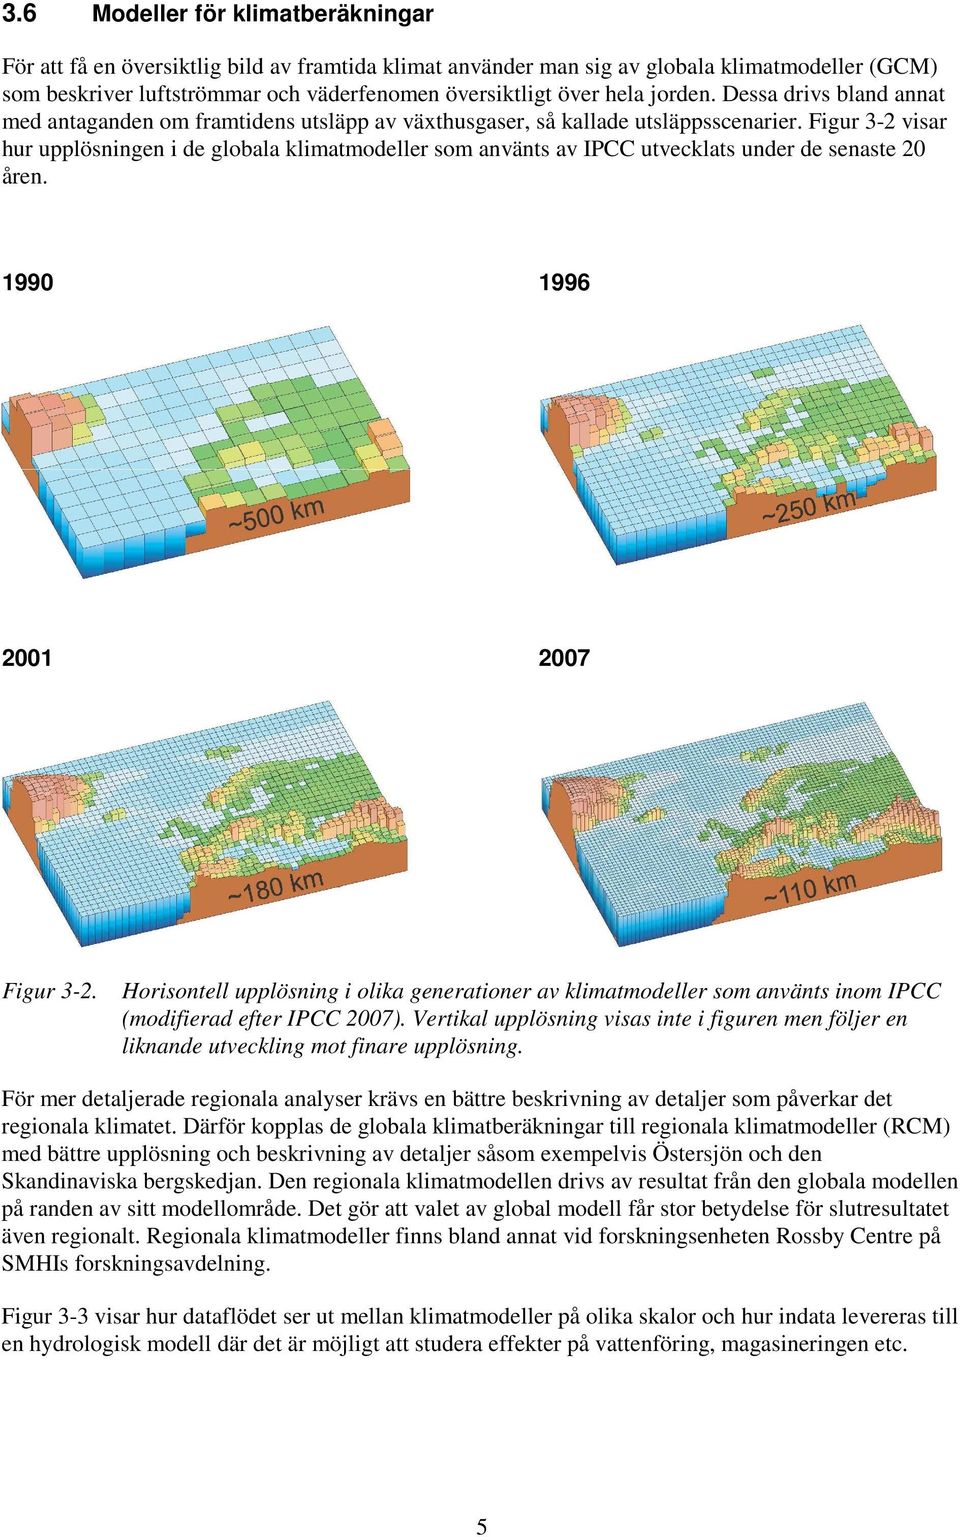 Figur 3-2 visar hur upplösningen i de globala klimatmodeller som använts av IPCC utvecklats under de senaste 20 åren. 1990 1996 2001 2007 Figur 3-2.